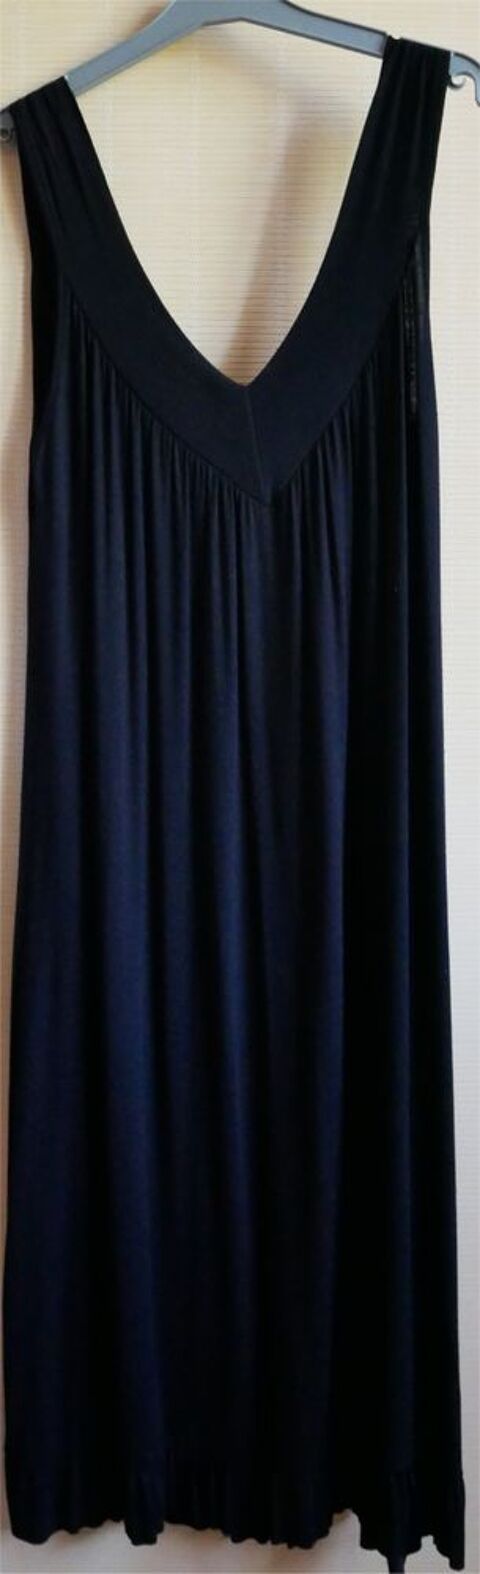 robe noire de femme enceinte ample  0 Saint-Germain-du-Plain (71)